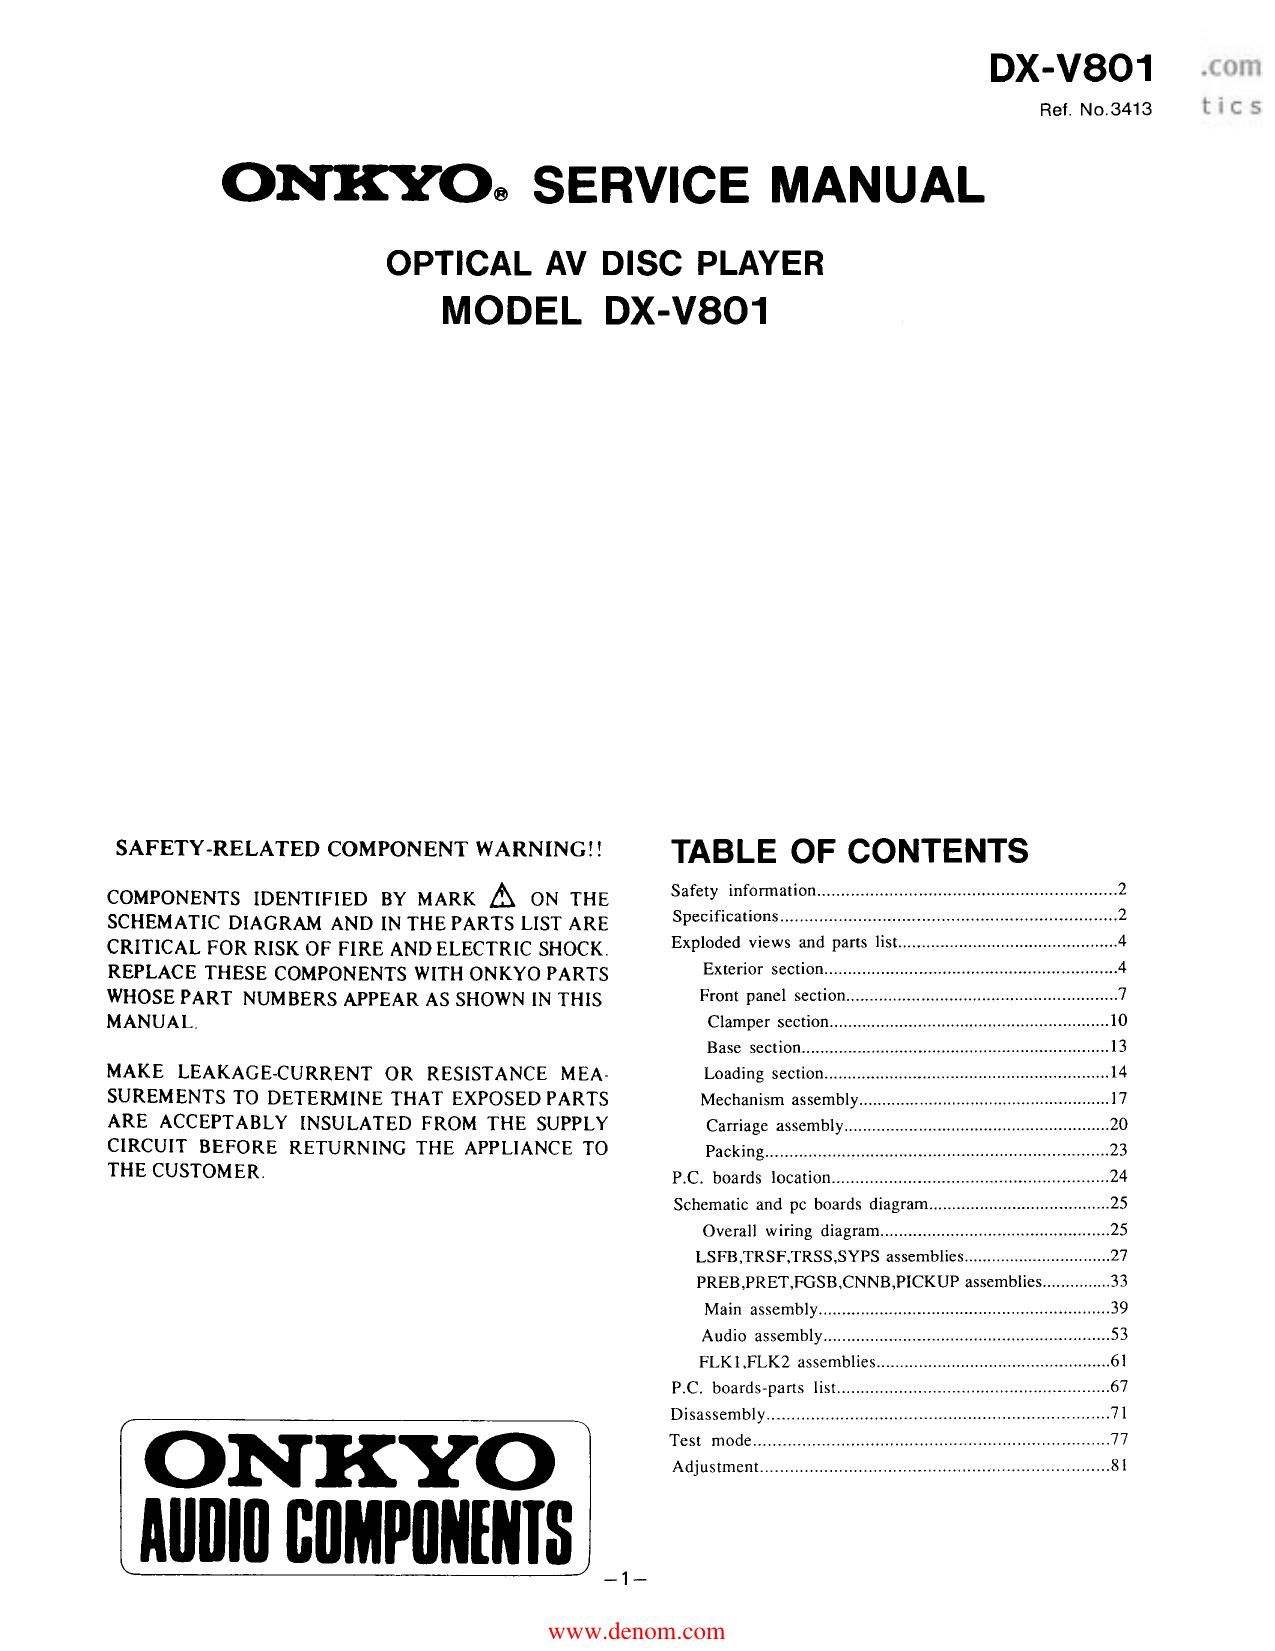 Onkyo DXV 801 Service Manual